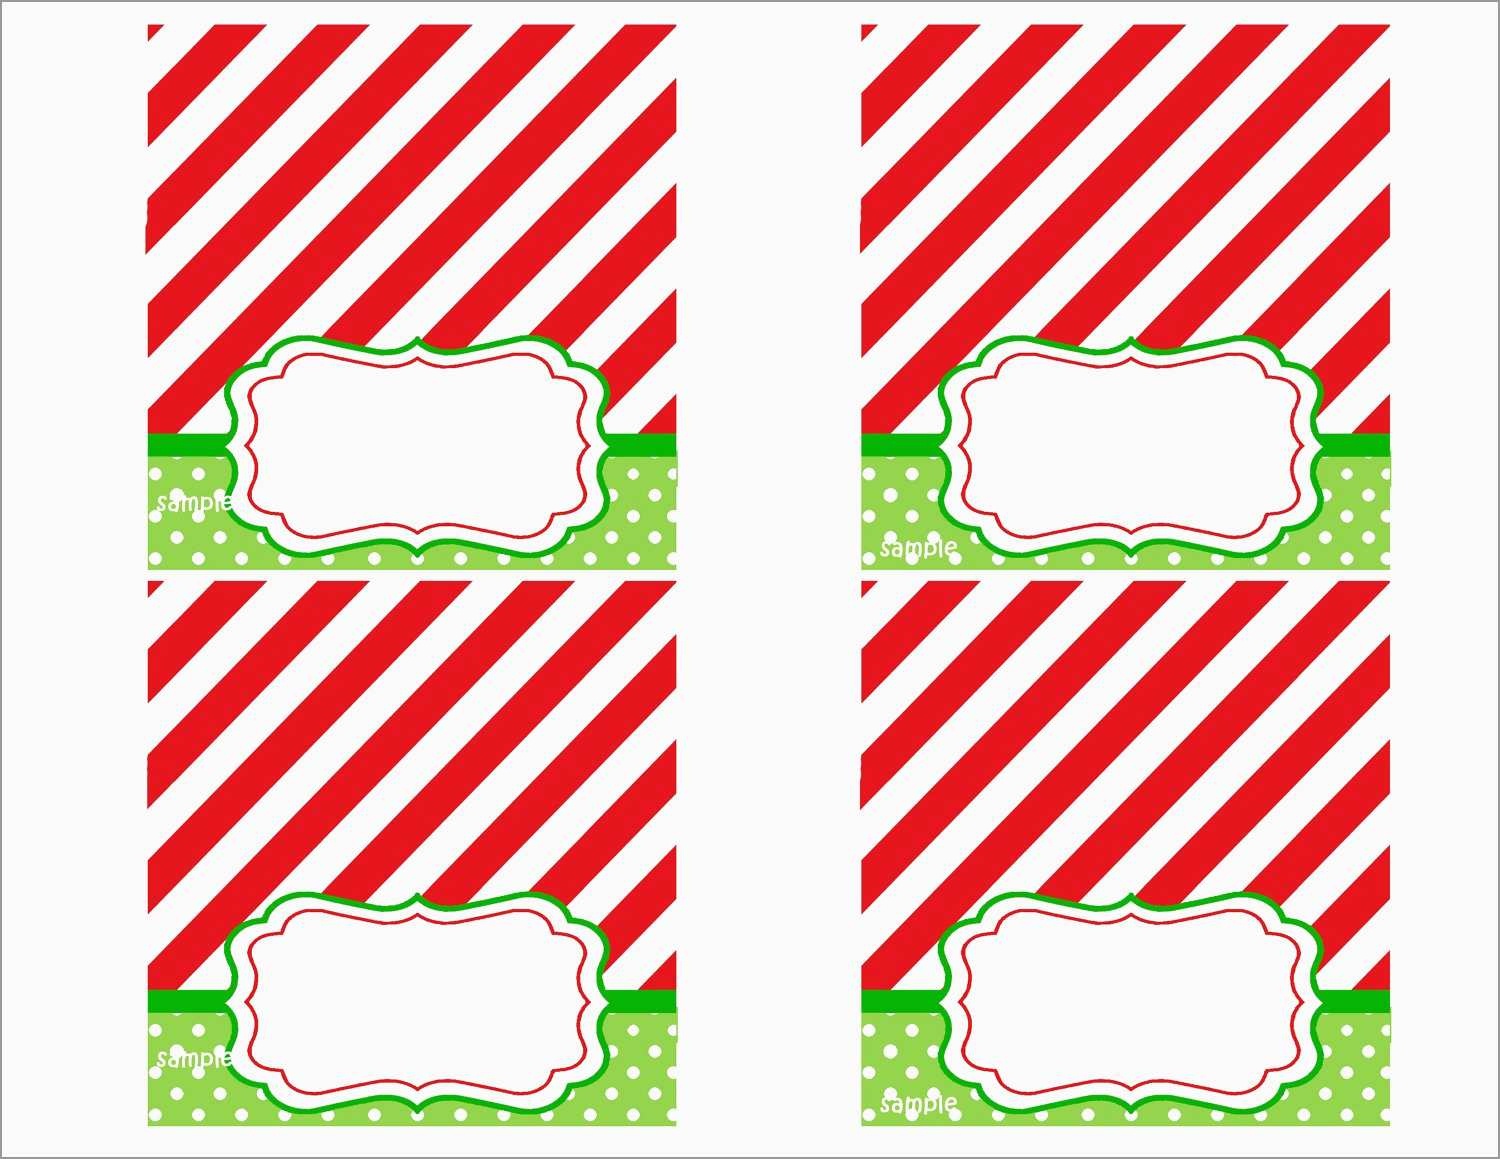 Awesome Free Printable Christmas Table Place Cards Template | Best - Free Printable Place Card Templates Christmas